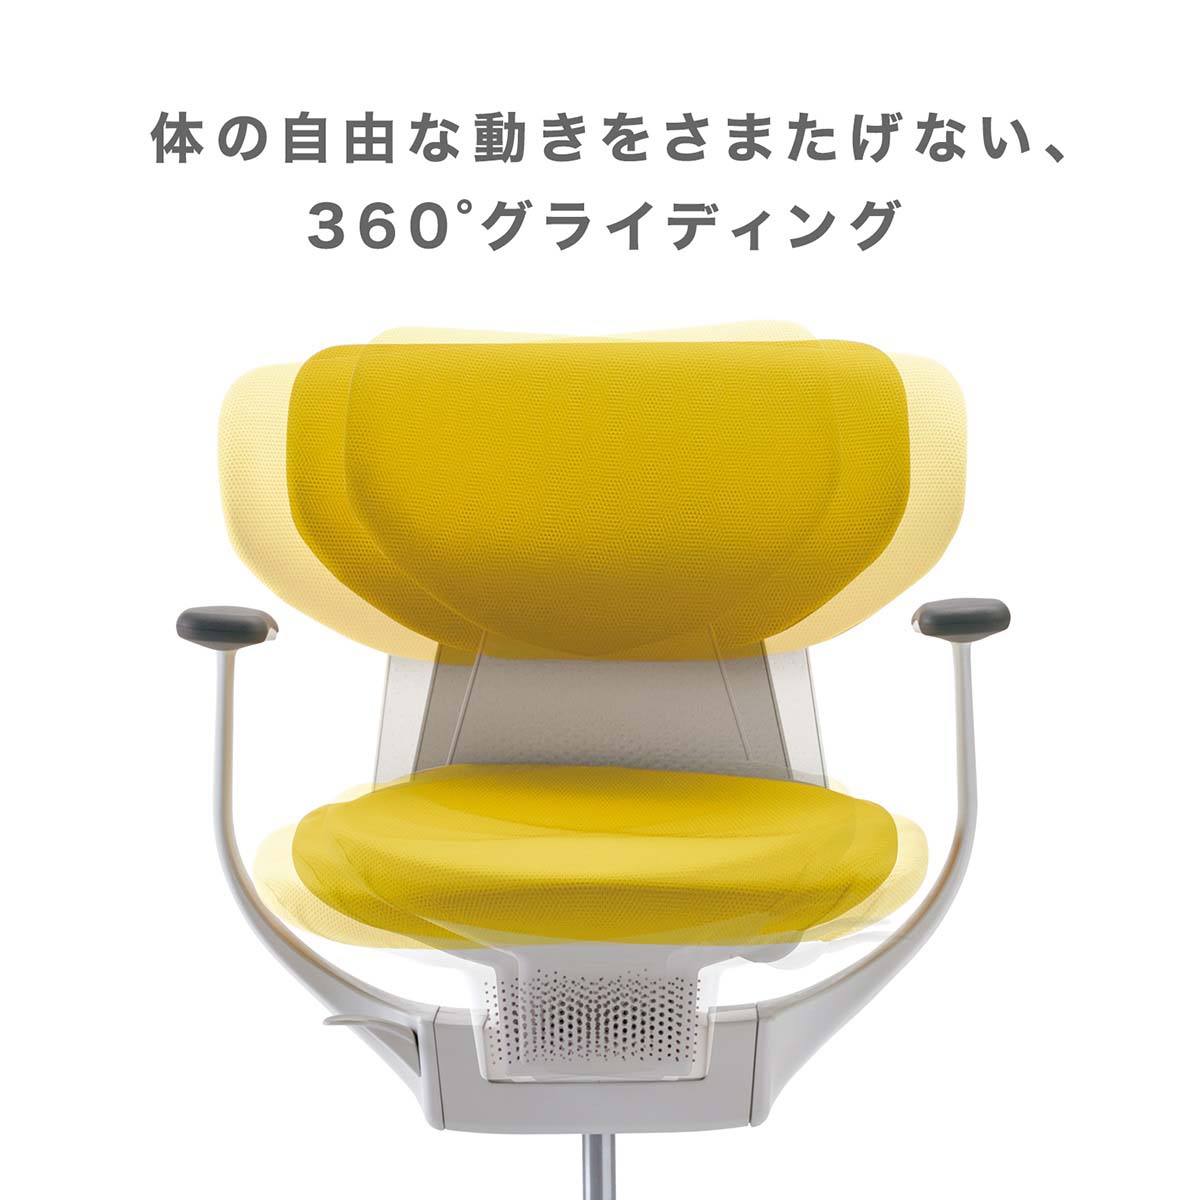 コクヨ デスクチェア オフィスチェア 椅子 ing イング CR-GA3245E6 クッションタイプ ヘッドレスト付きタイプ アルミ肘 ブラックシェル アルミポリッシュ脚 -w カーペット用キャスター 3